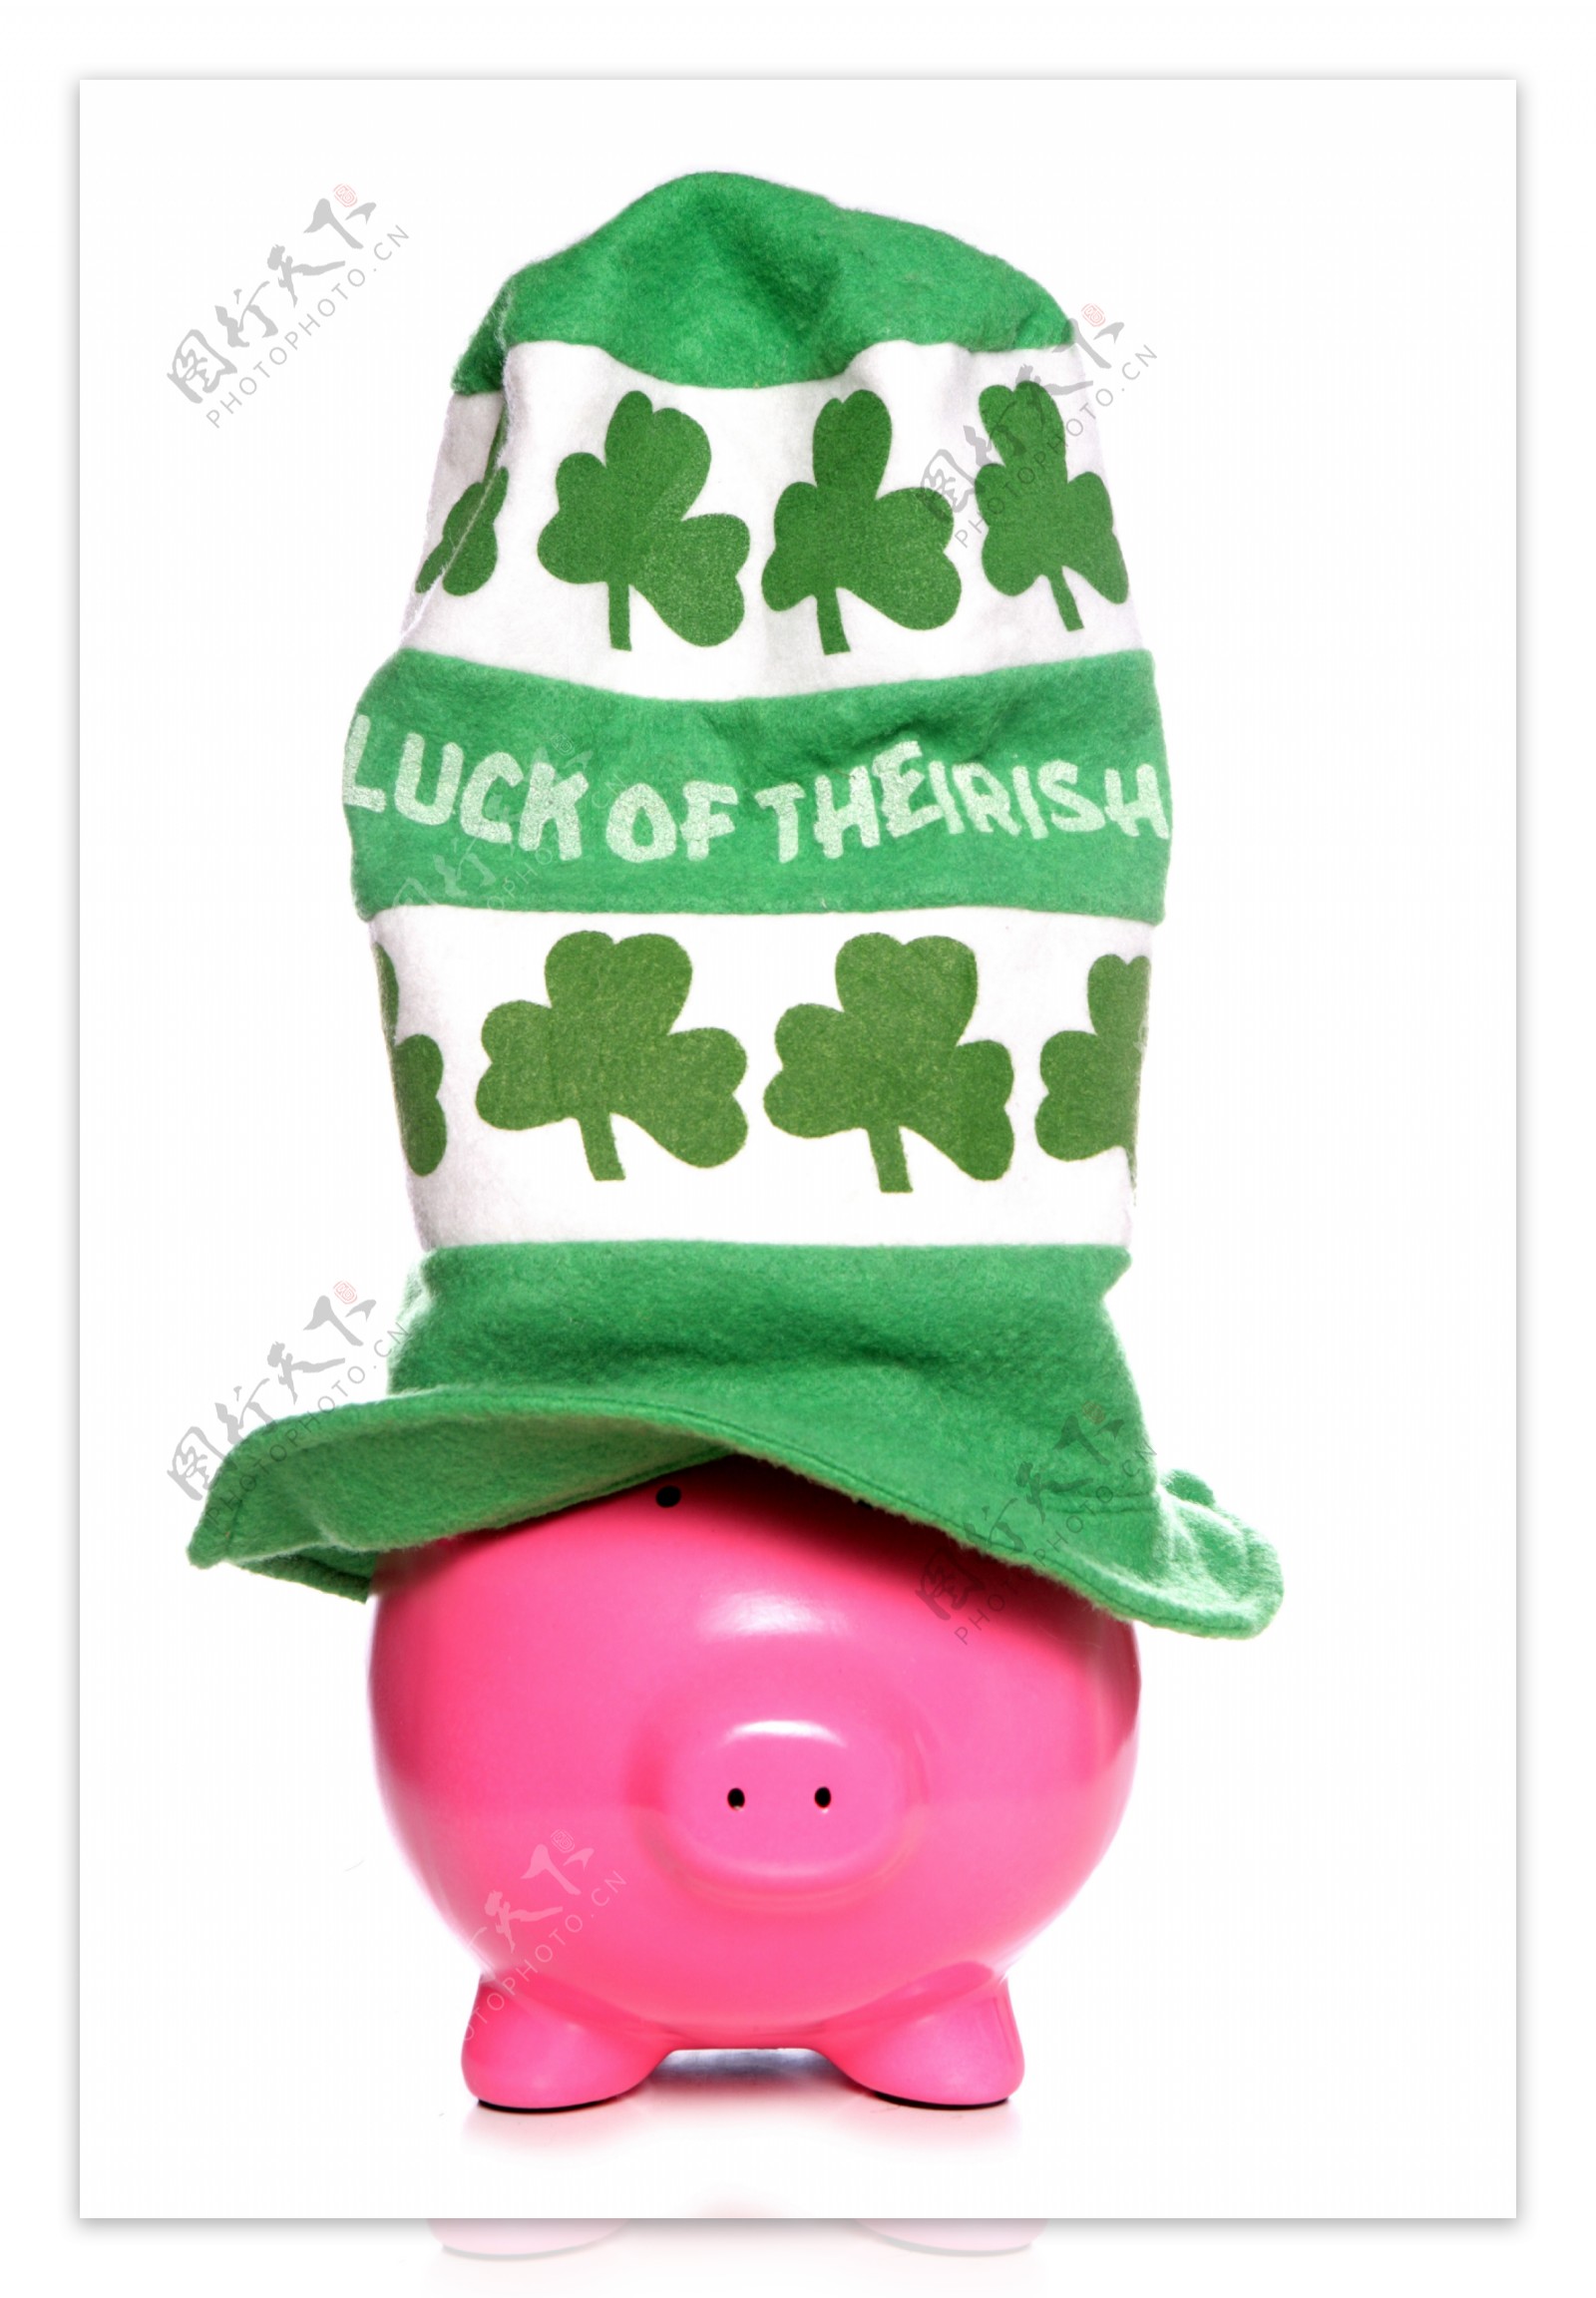 小猪存钱罐图片